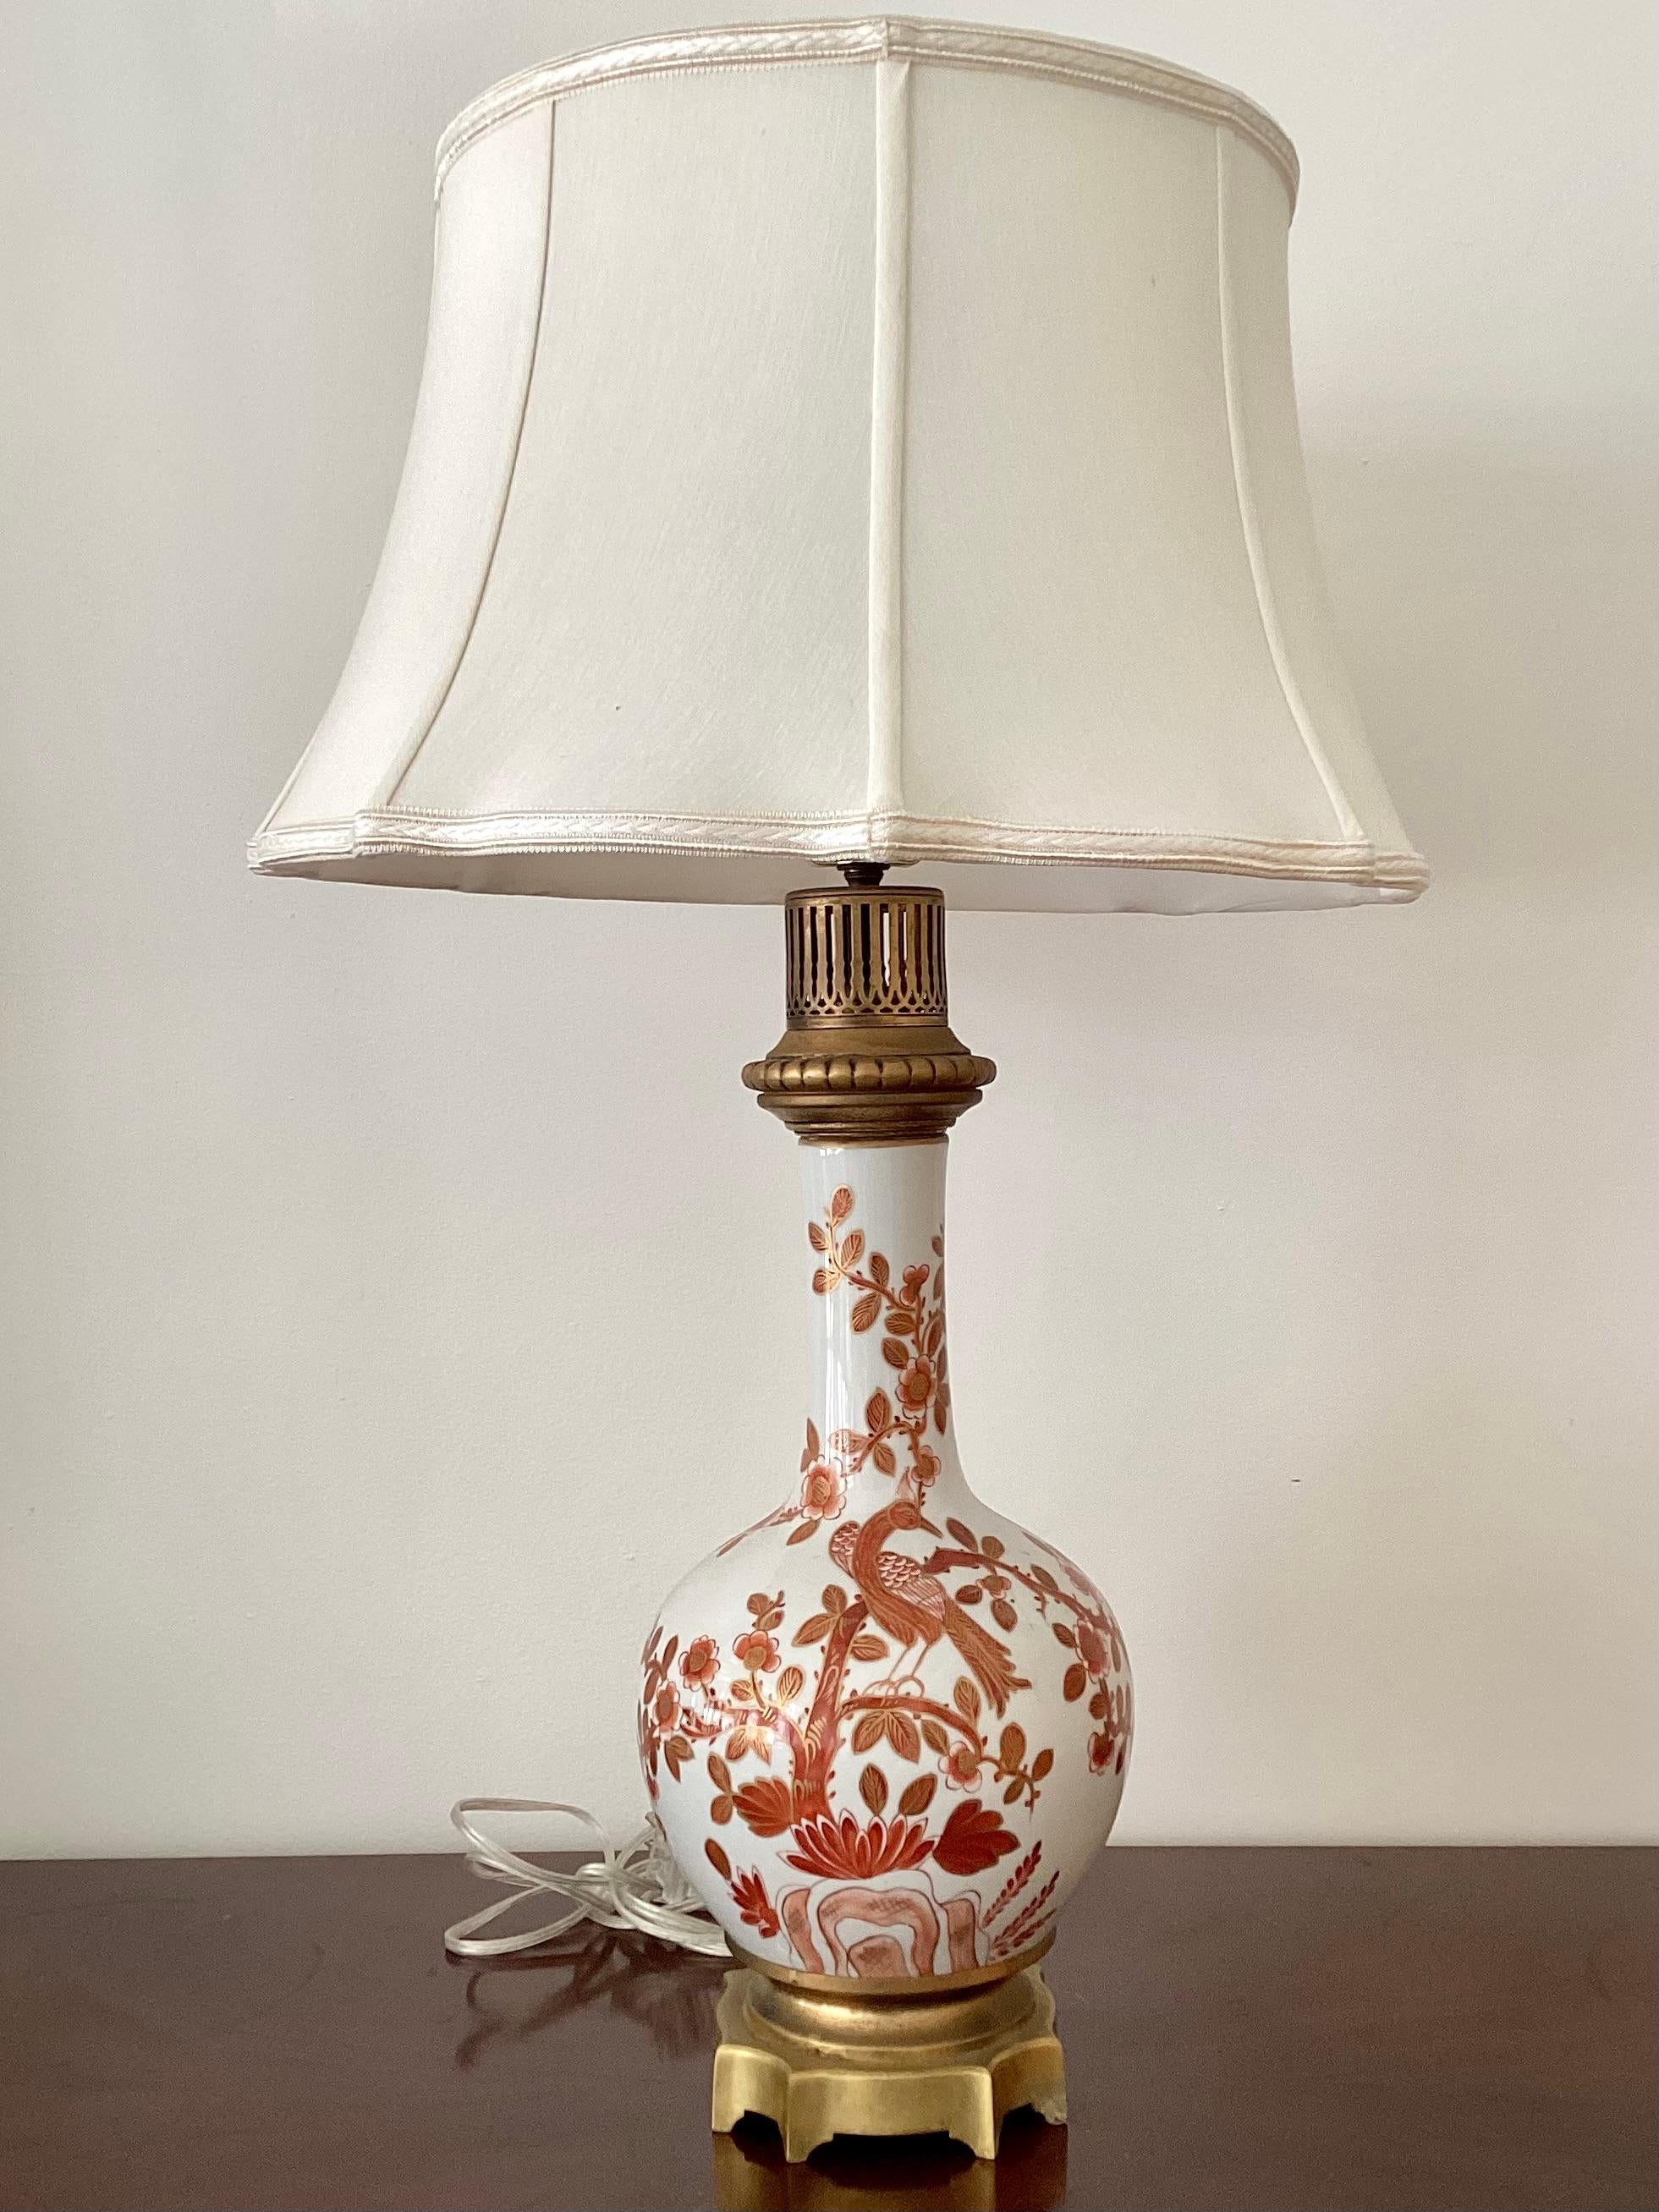 Einzelne dekorative asiatische Vintage-Lampe mit Natur-Szene von Bäumen und Vogel. Diese Lampe hat einen stabilen Sockel aus vergoldeter Bronze. Ergänzen Sie Ihre Chinoiserie-Sammlung mit dieser schönen Lampe.